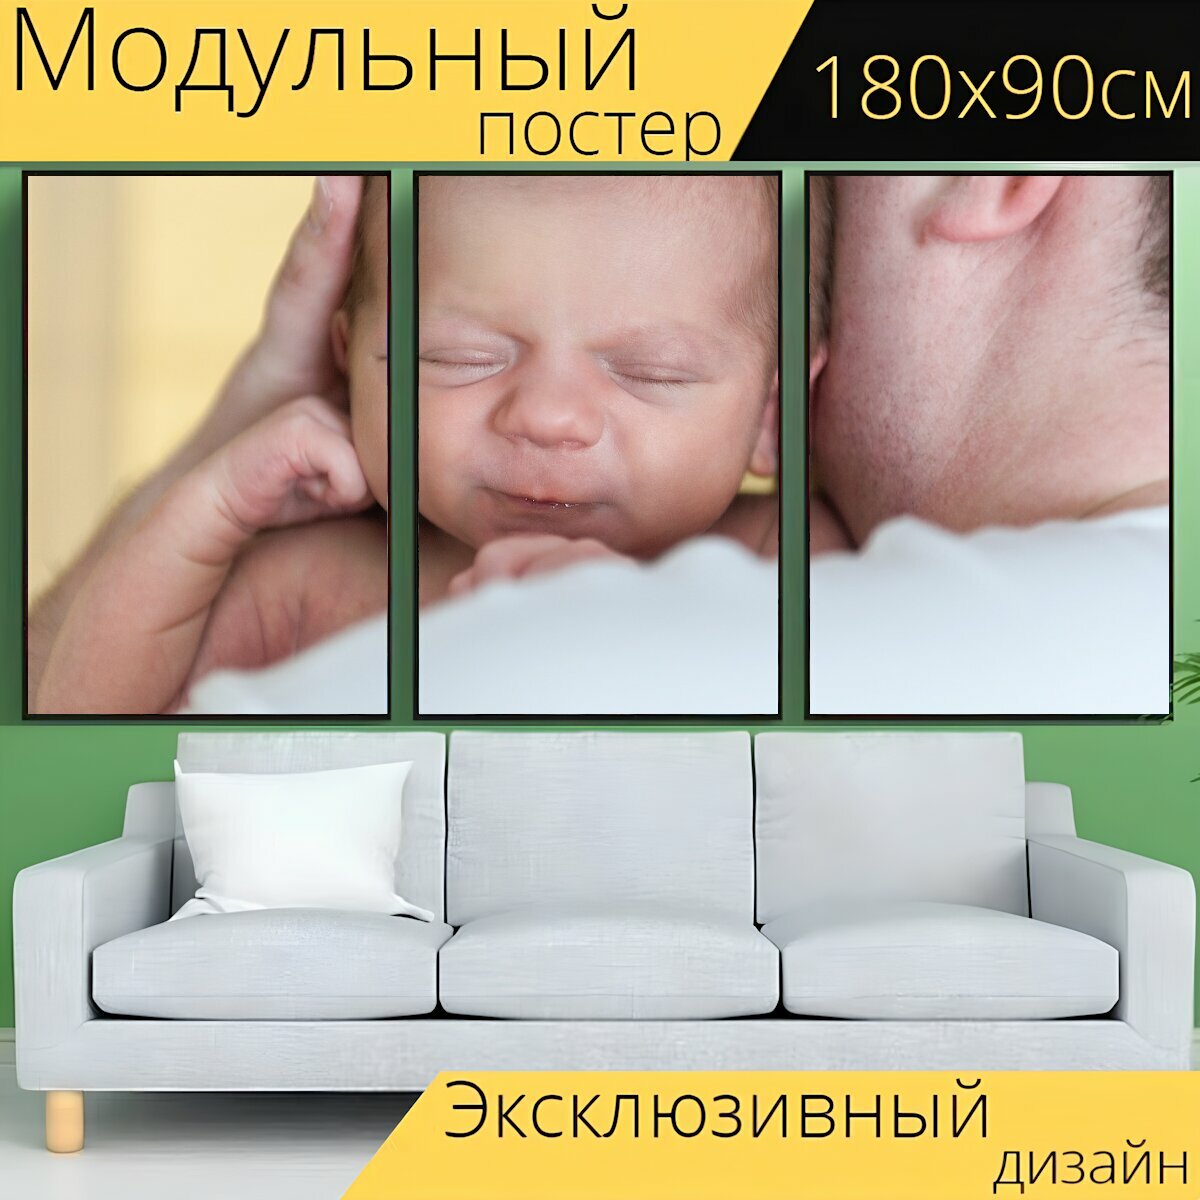 Модульный постер "Детка, новорожденный, ребенок" 180 x 90 см. для интерьера